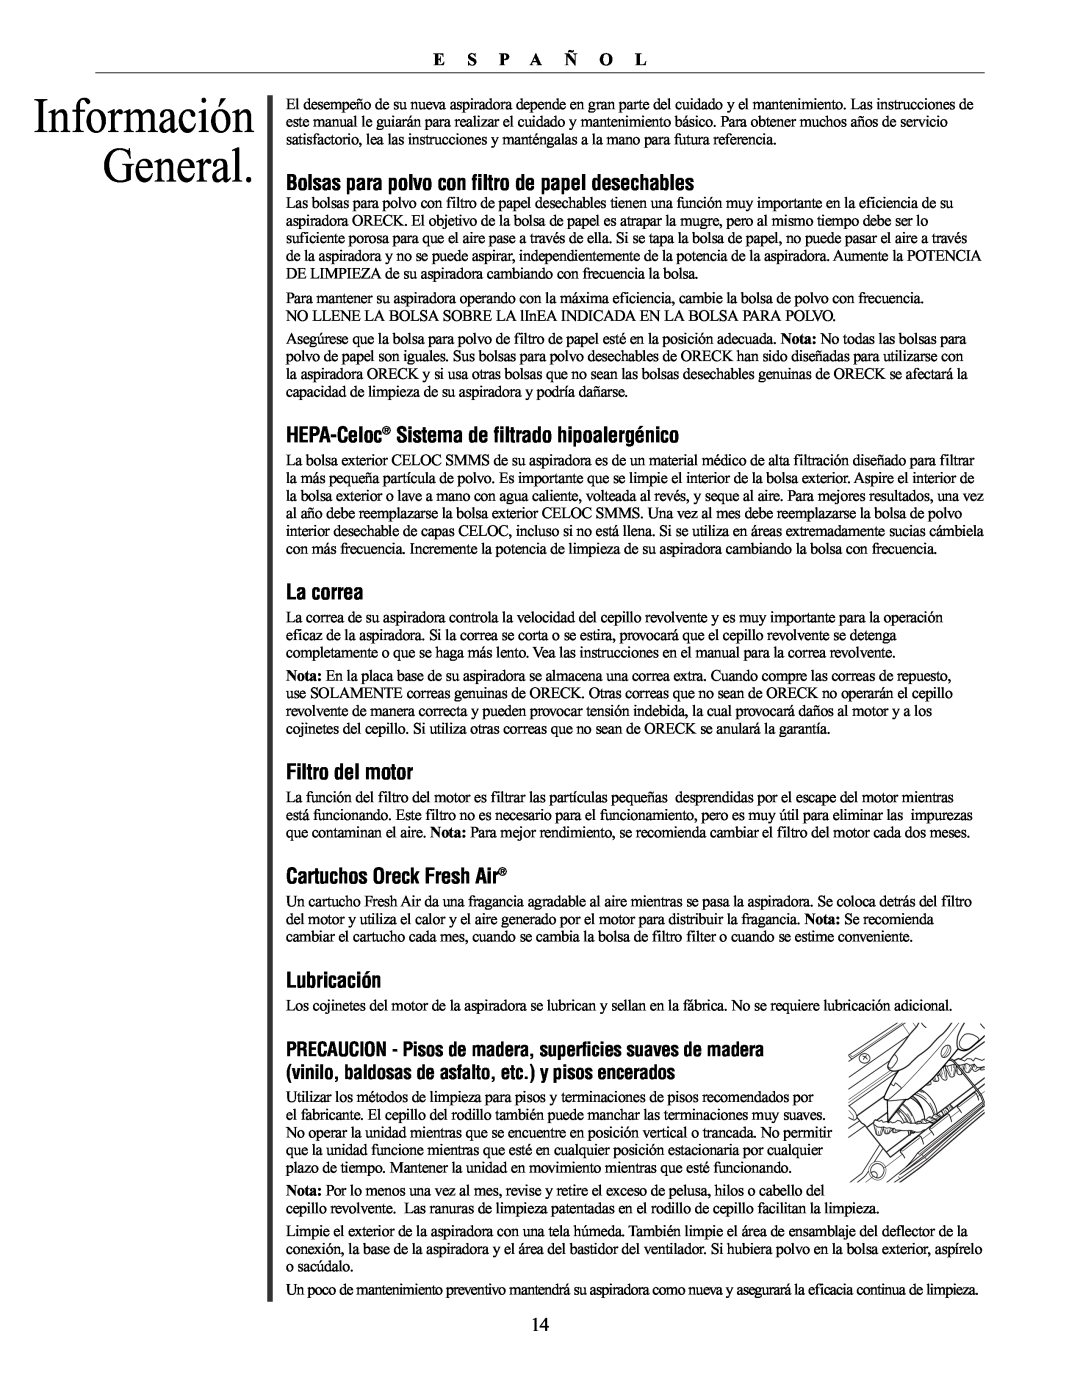 Oreck XL21 manual Información General, Bolsas para polvo con filtro de papel desechables, La correa, Filtro del motor 